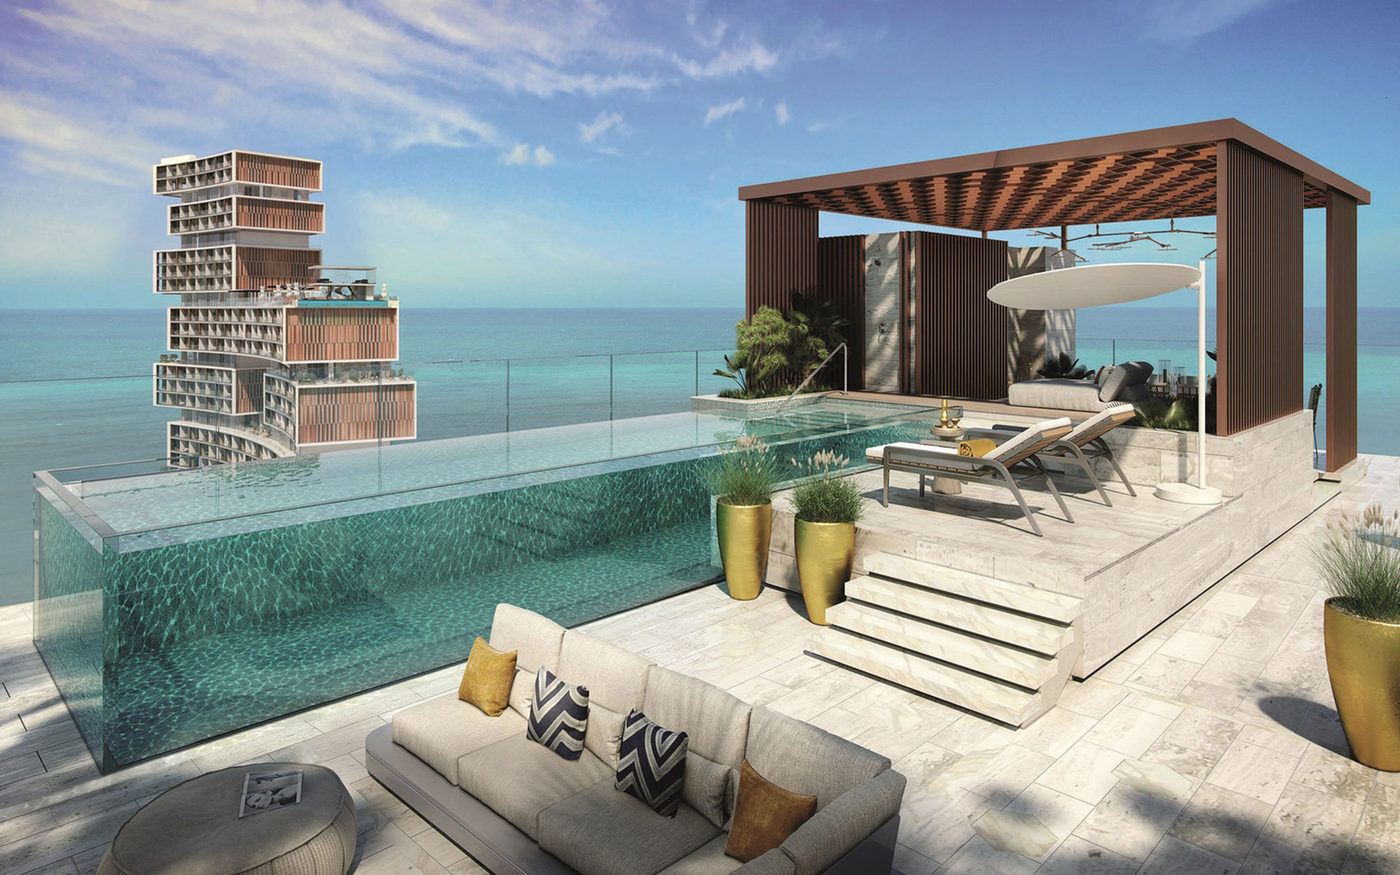 imagen 3 de The Royal Atlantis Resort & Residences, un nuevo edificio de lujo y escándalo en Dubai.